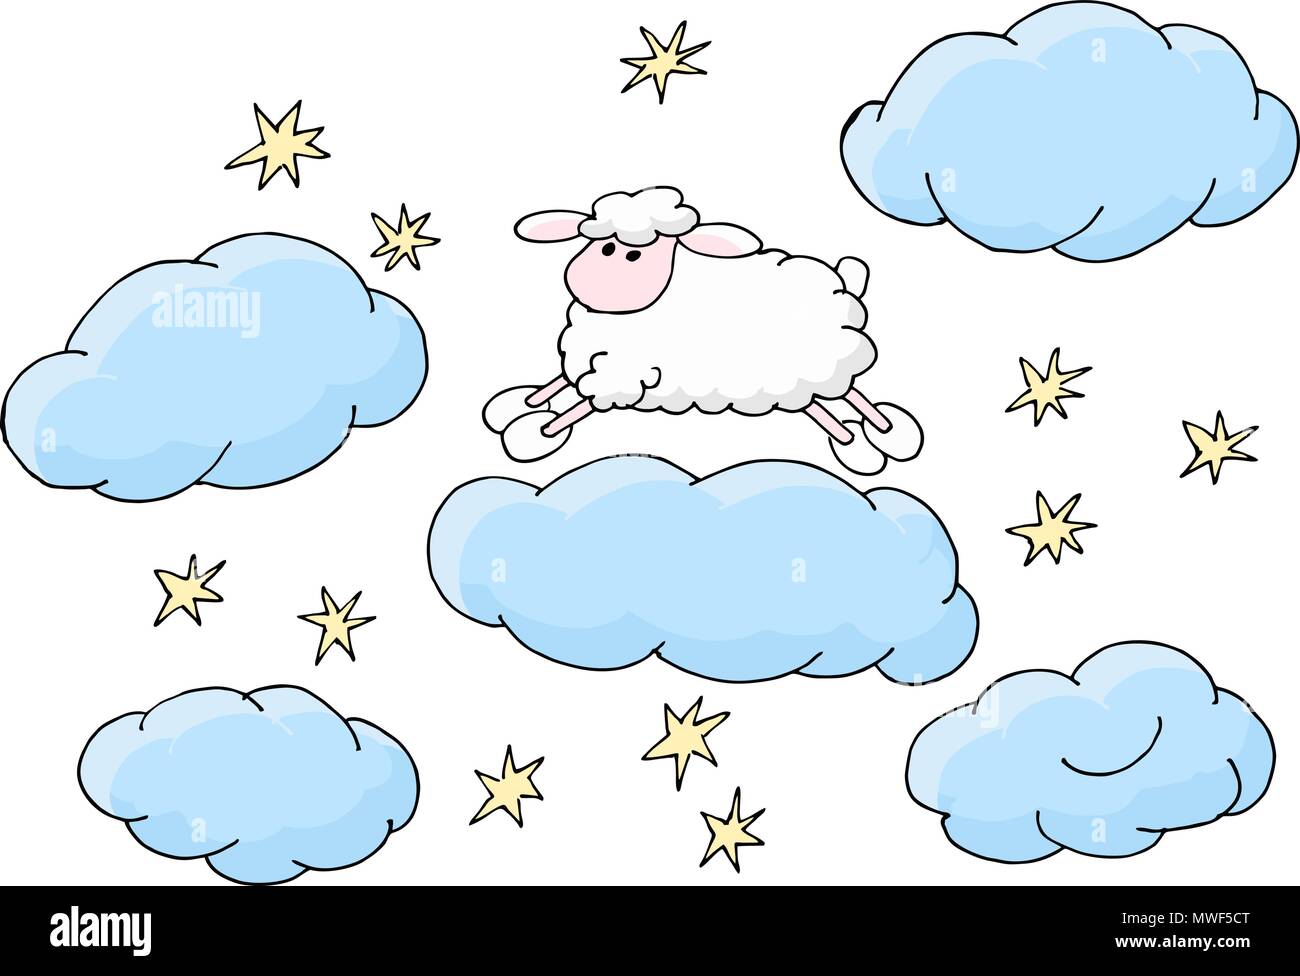 Schäfchen zählen schlafend Vector Illustration zu fallen. Cute cartoon  Schafe springen über Cloud. Gute Nacht Schlaf Metapher Stock-Vektorgrafik -  Alamy